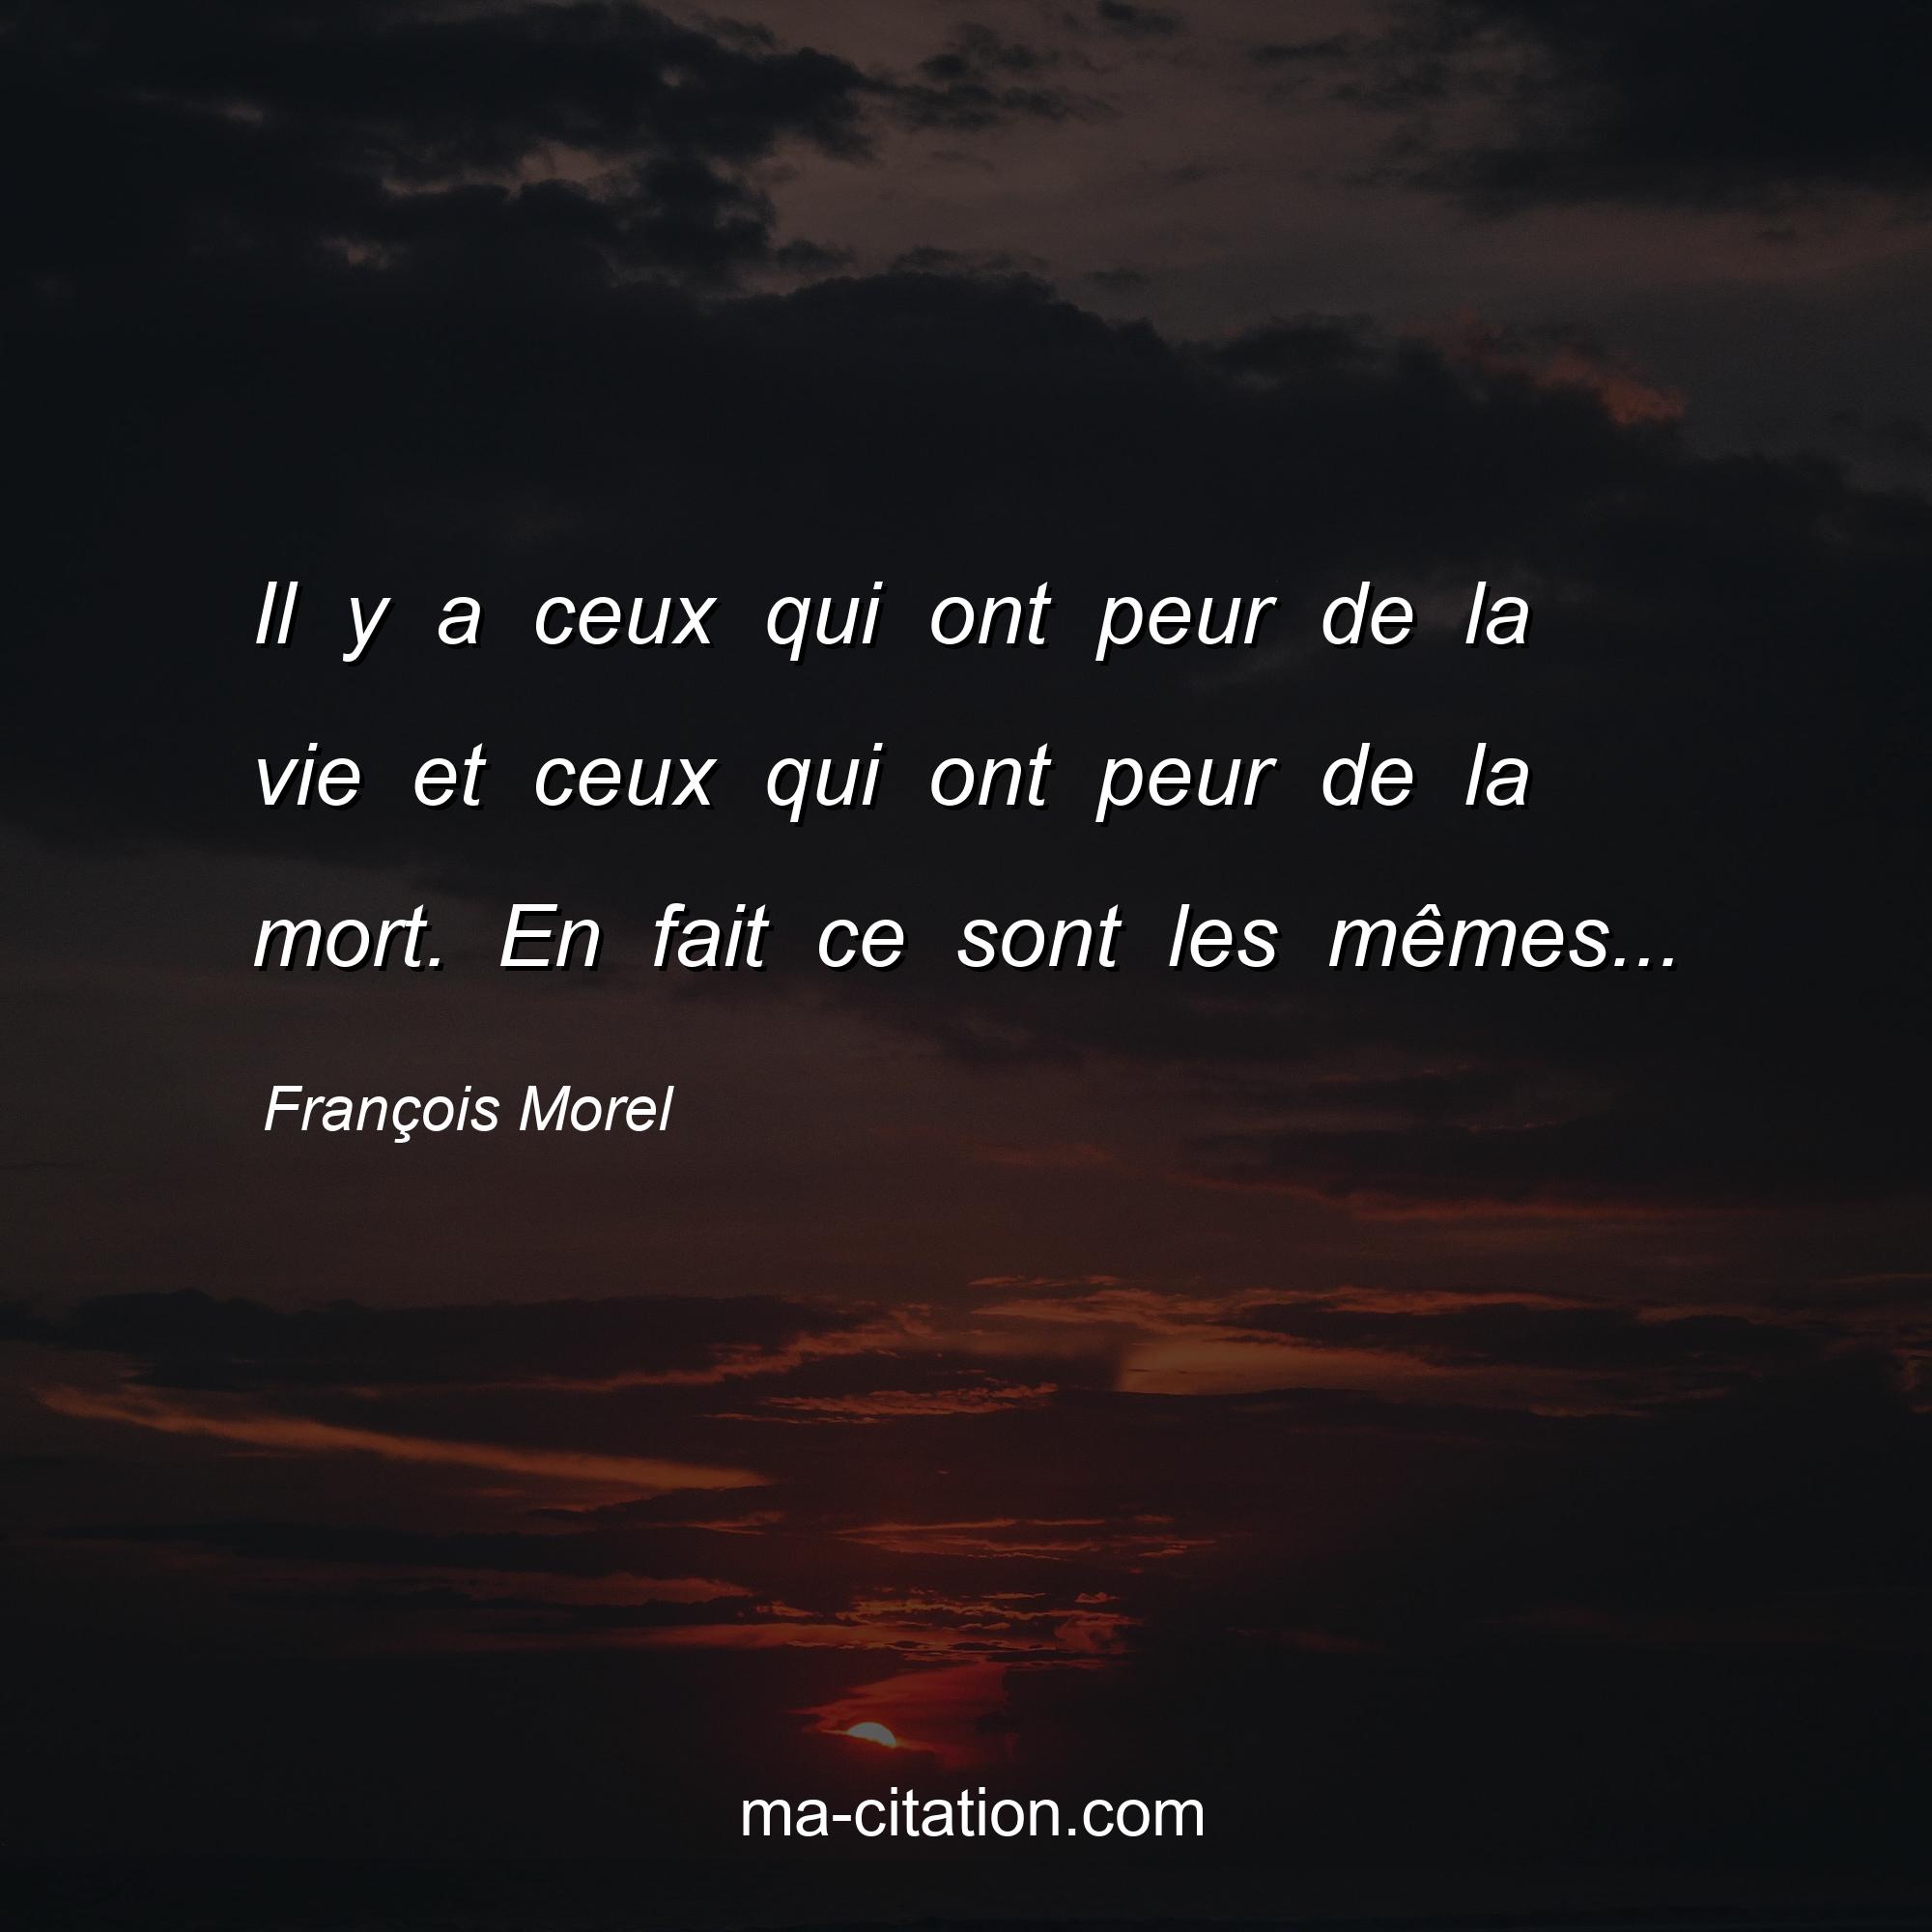 François Morel : Il y a ceux qui ont peur de la vie et ceux qui ont peur de la mort. En fait ce sont les mêmes...